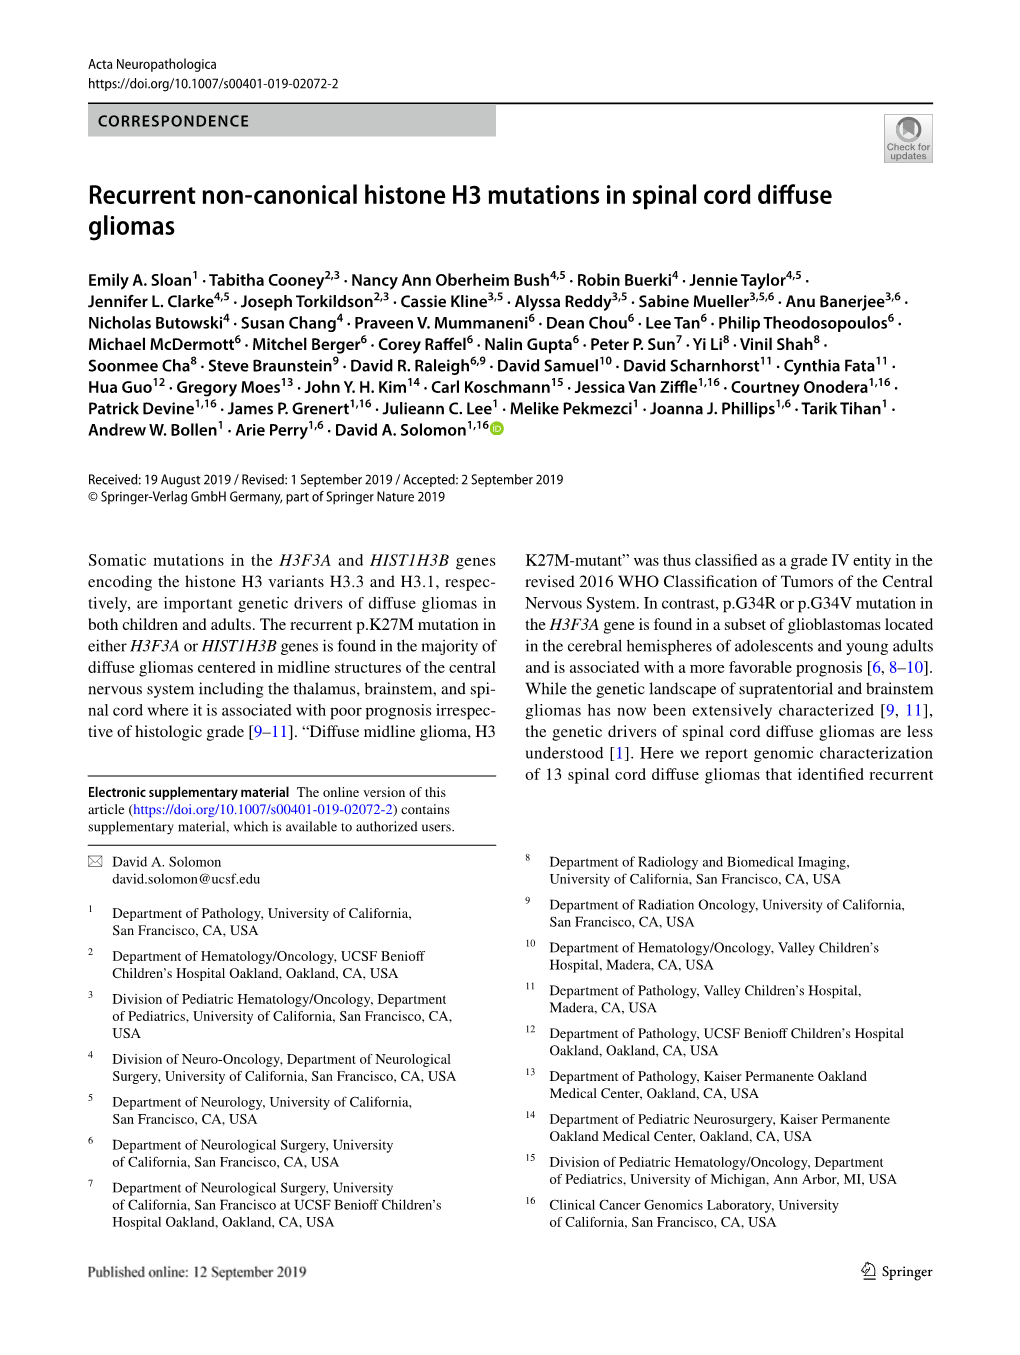 Recurrent Non-Canonical Histone H3 Mutations in Spinal Cord Diffuse Gliomas